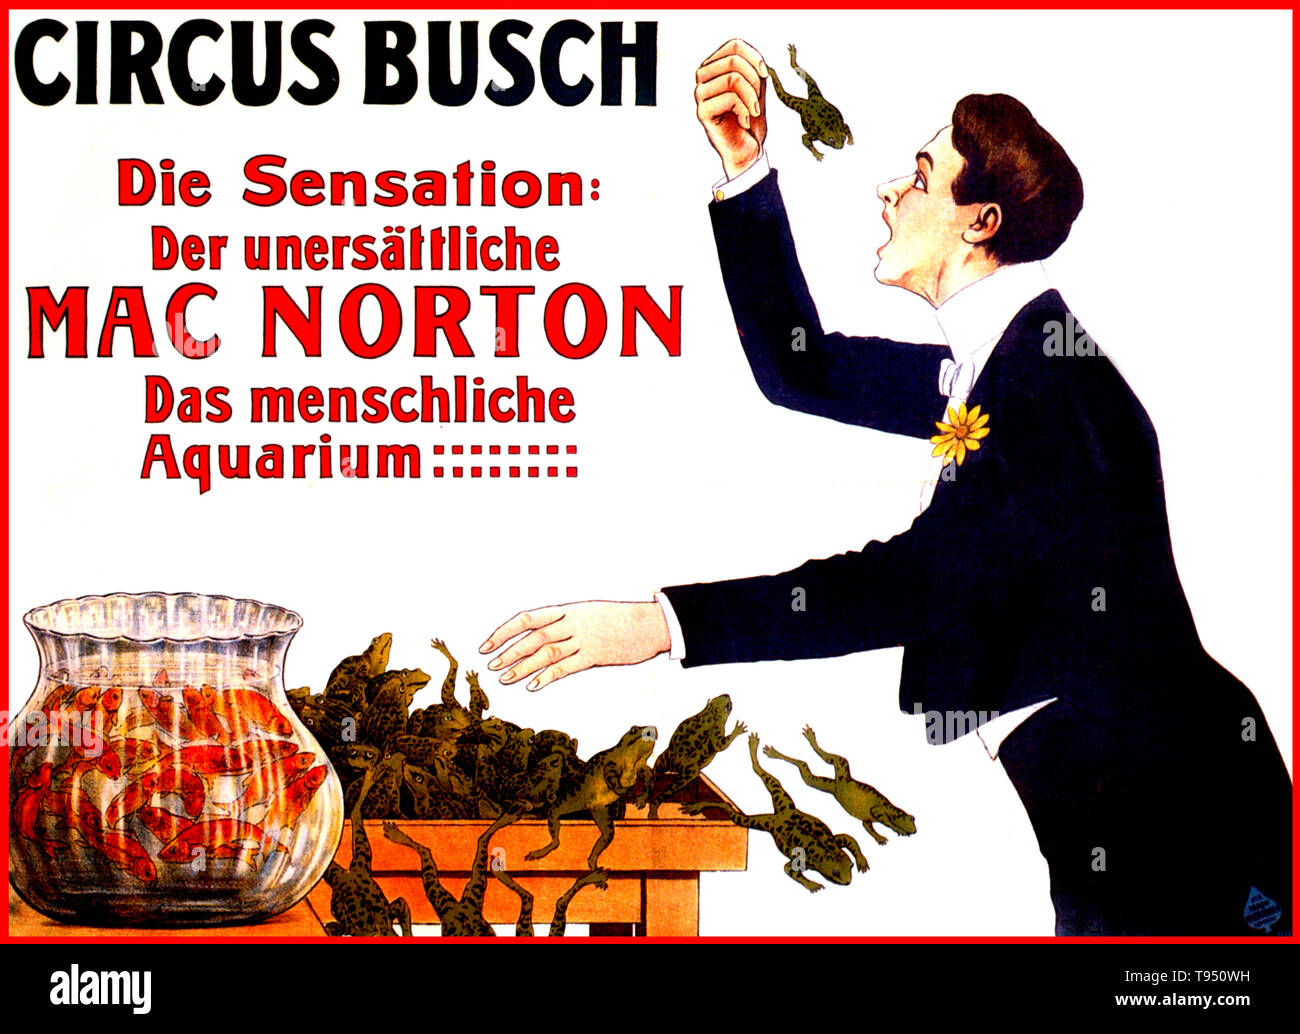 Mac Norton (geb. Claude Louis Delair, 1876 - 1953) war ein französischer Magier berechnet wird als "Der menschliche Aquarium". Wie ein Kind, er entwickelt die Fähigkeit zu schlucken und dann Erbrechen kleine Mengen Wasser. Als Erwachsener, als er sah, dass andere Magier ein gutes Leben, wurden als regurgitators, damit er sein eigenes Handeln entwickelt, lernen große Mengen Wasser und Brot zu schlucken, und sogar lebende Tiere. Stockfoto